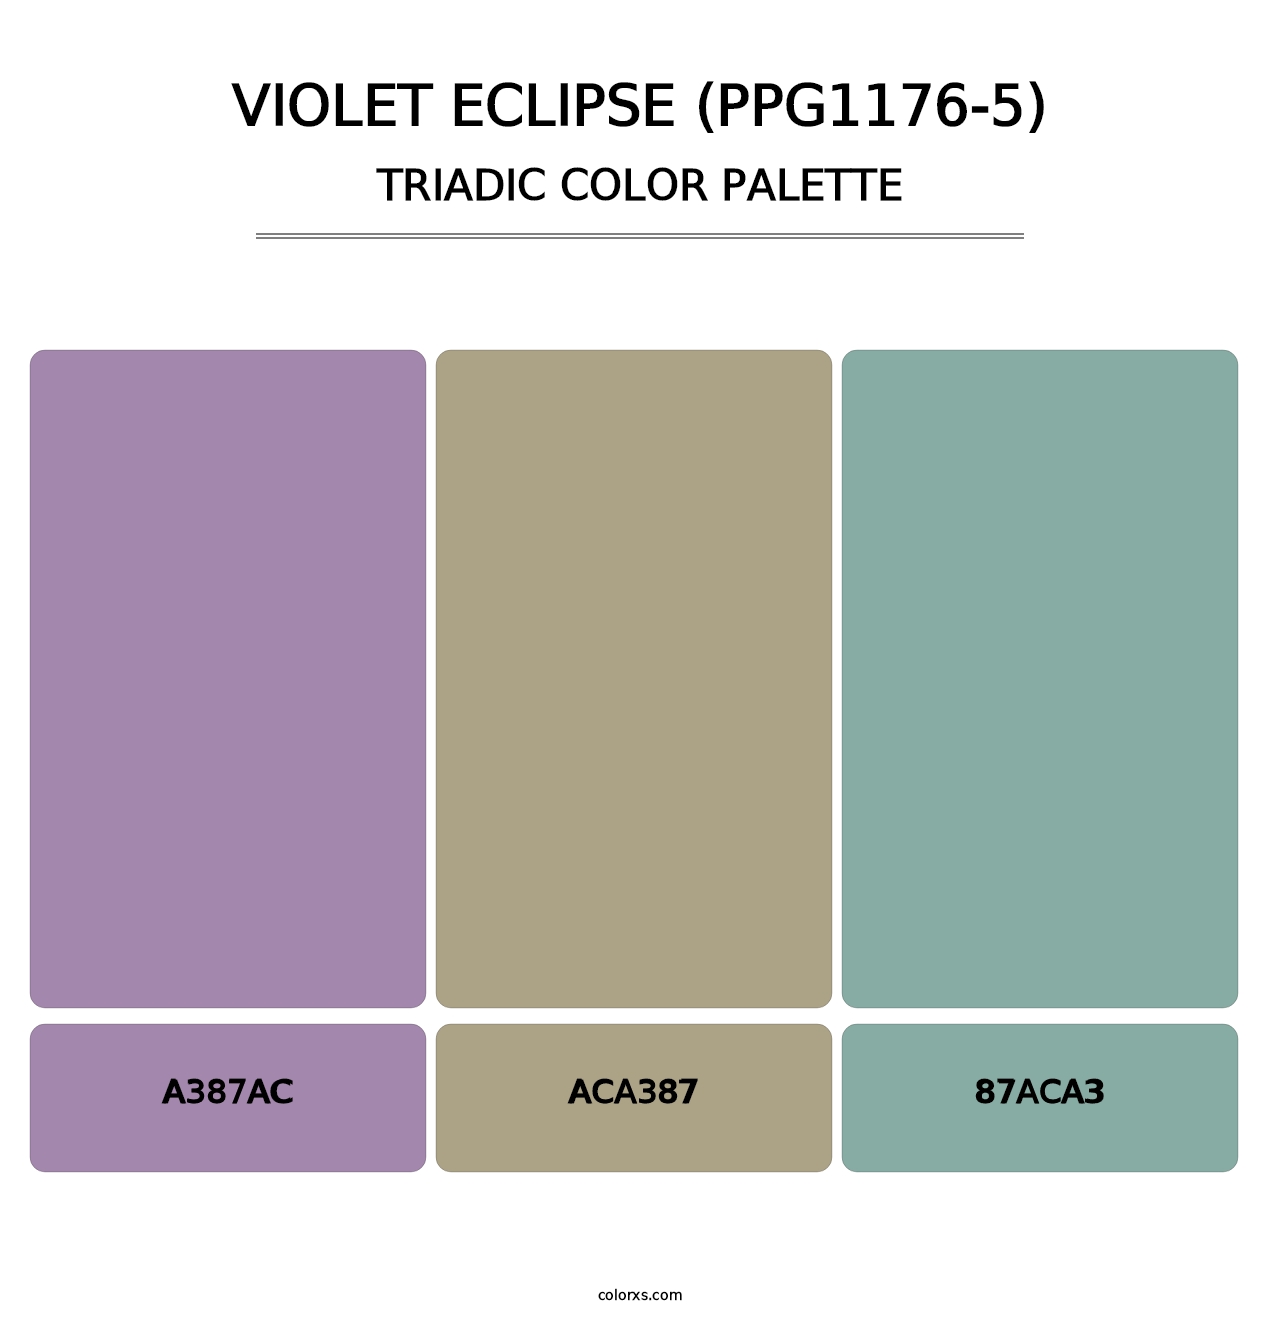 Violet Eclipse (PPG1176-5) - Triadic Color Palette